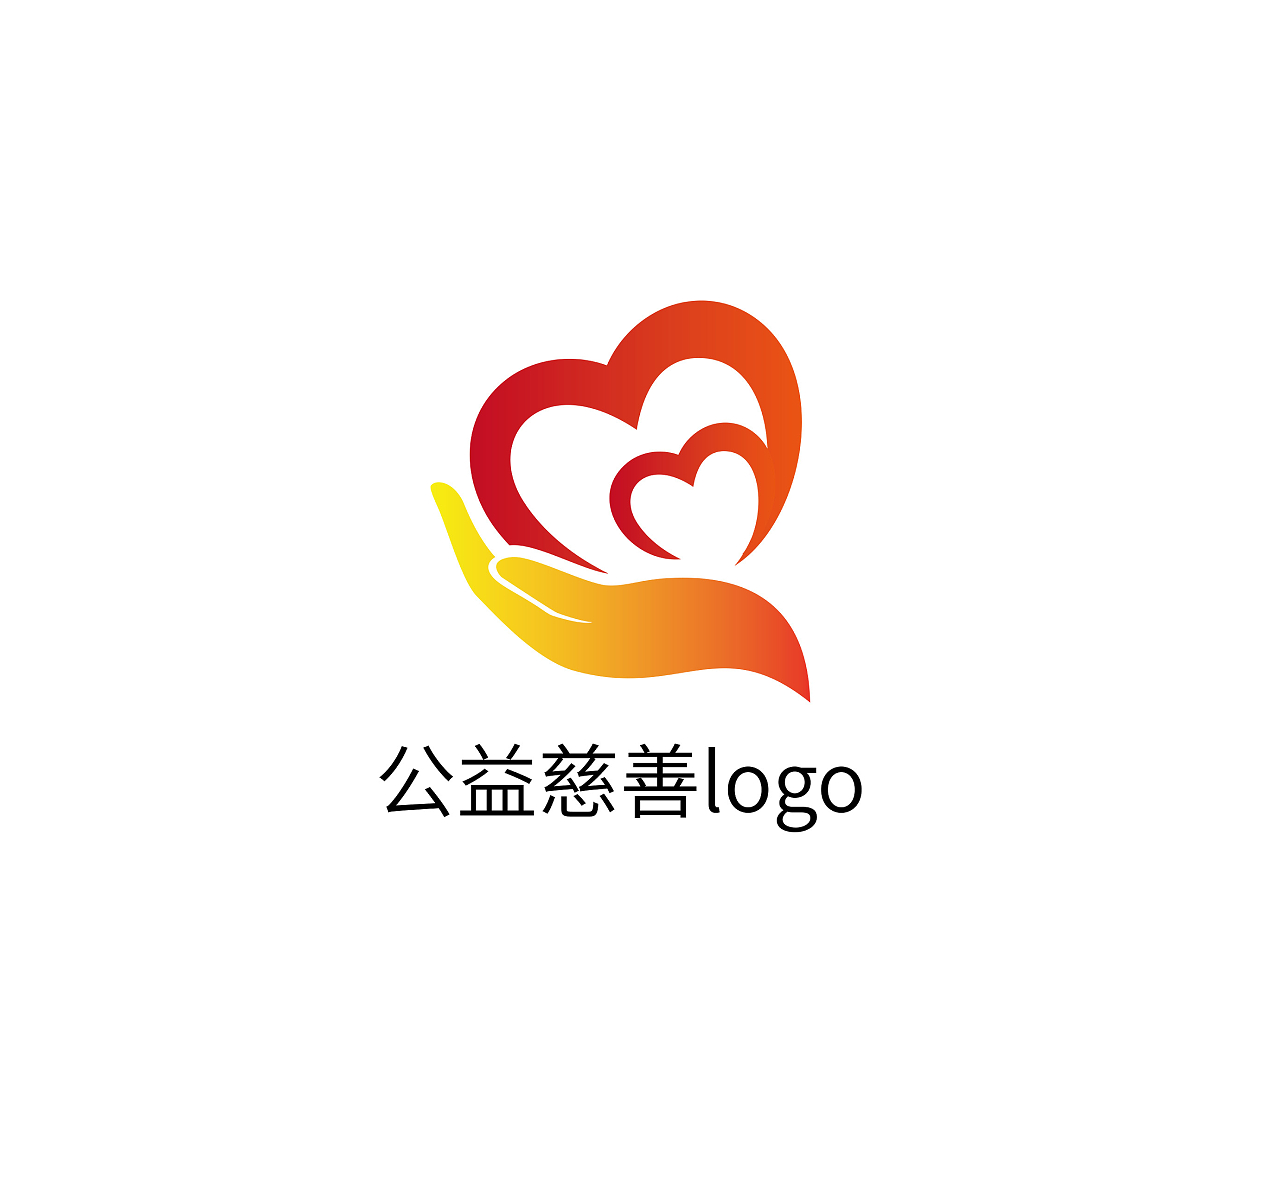 志愿者爱心标志LOGO模板设计文化志愿者logo爱心logo